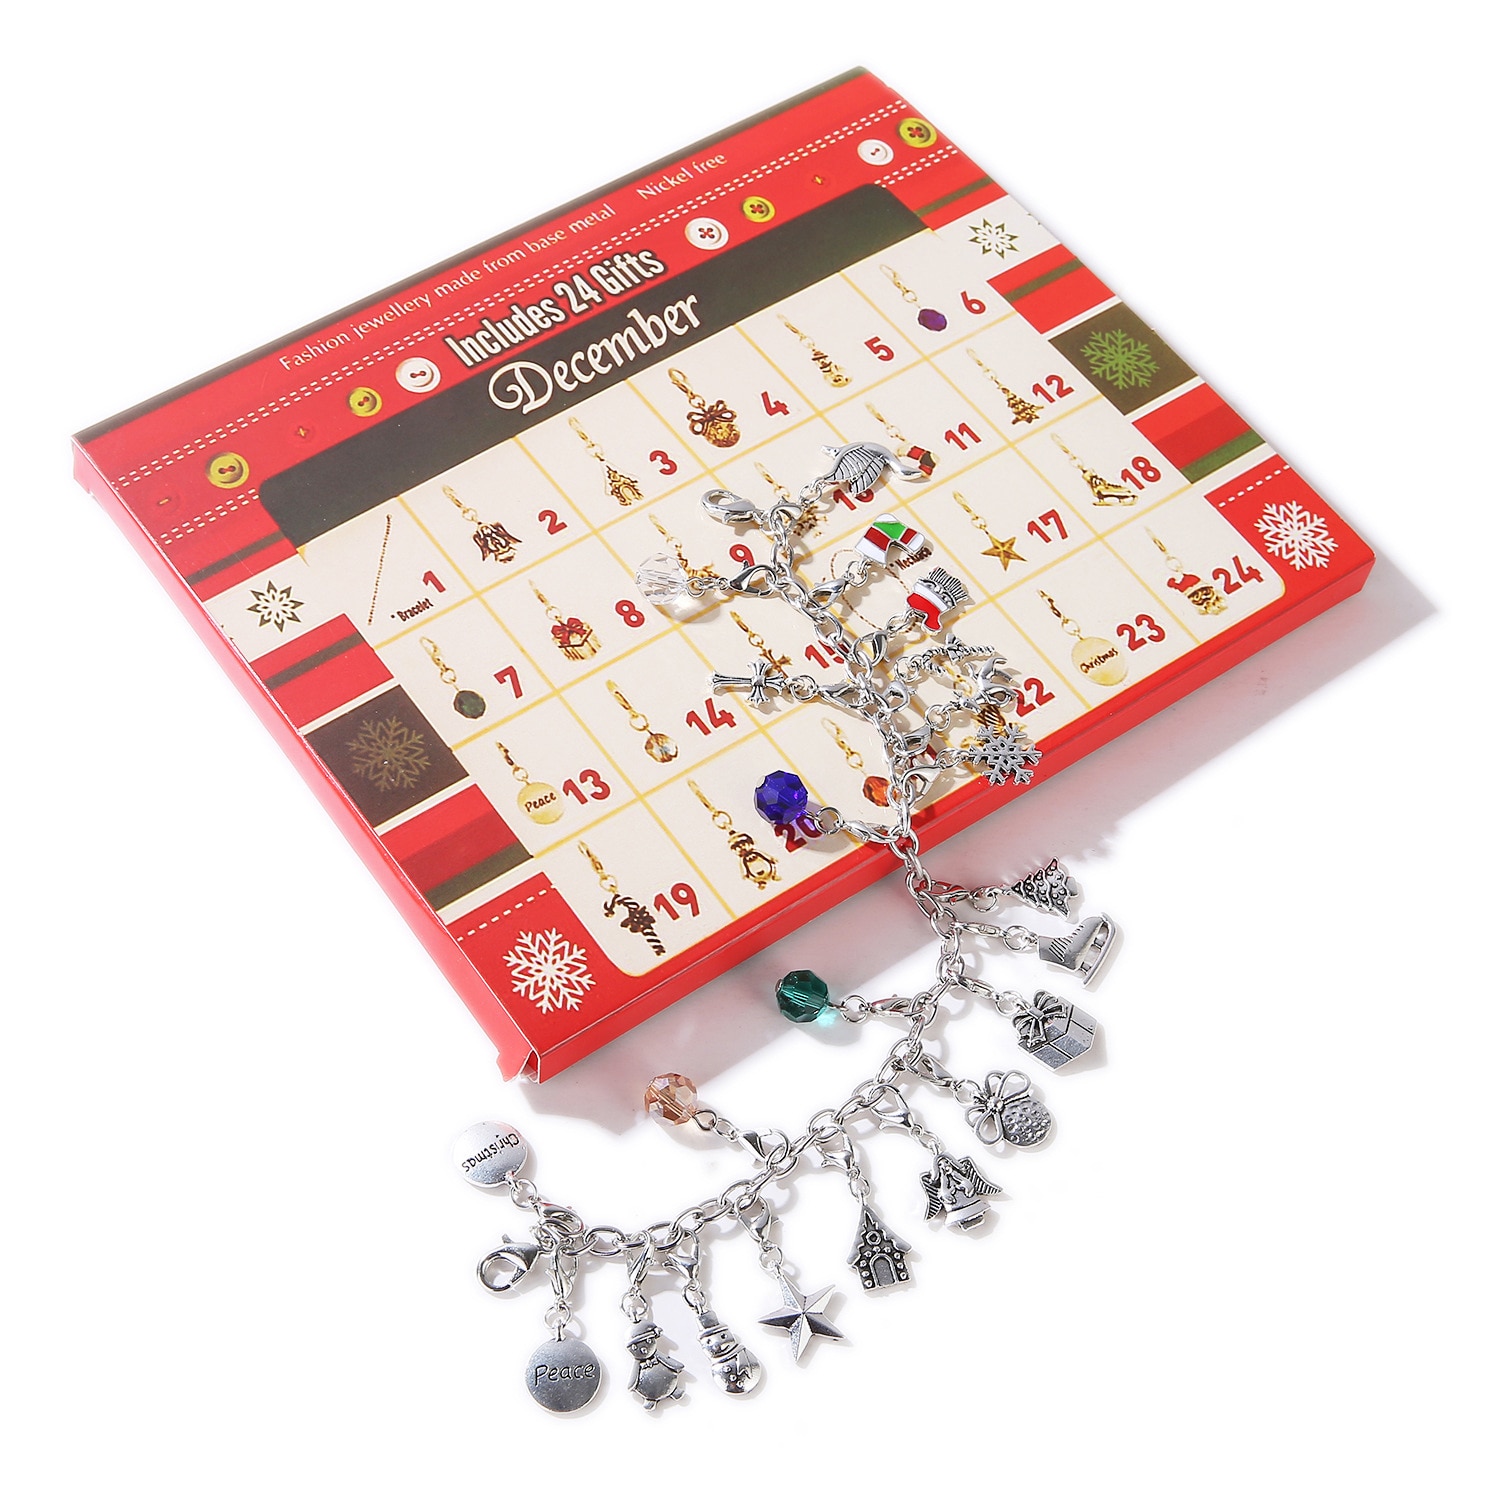 Glædelig jul advent charme kalender med 22 stk charms diy armbånd halskæde håndværk legetøj gør børn piger kvinder